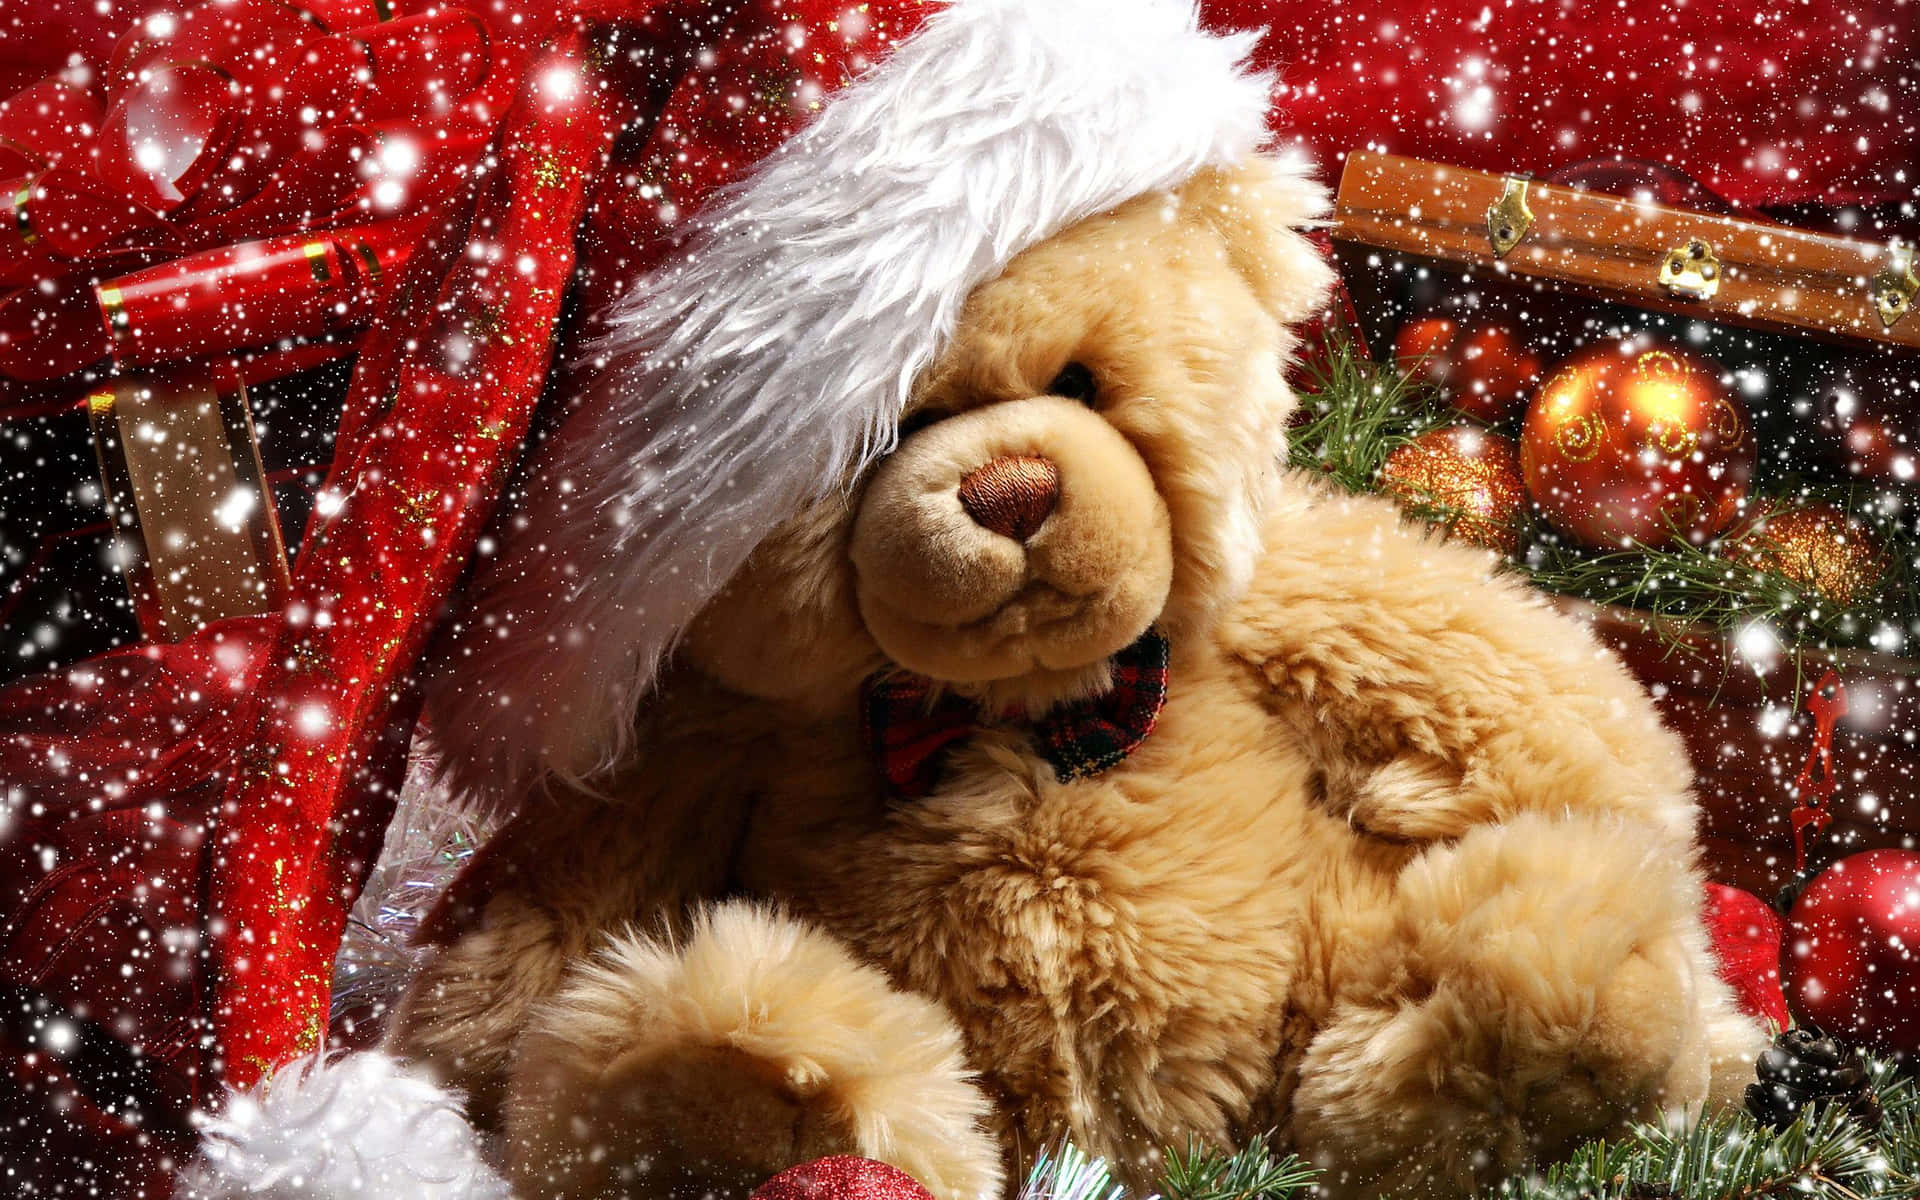 A Teddy Bear In A Santa Hat